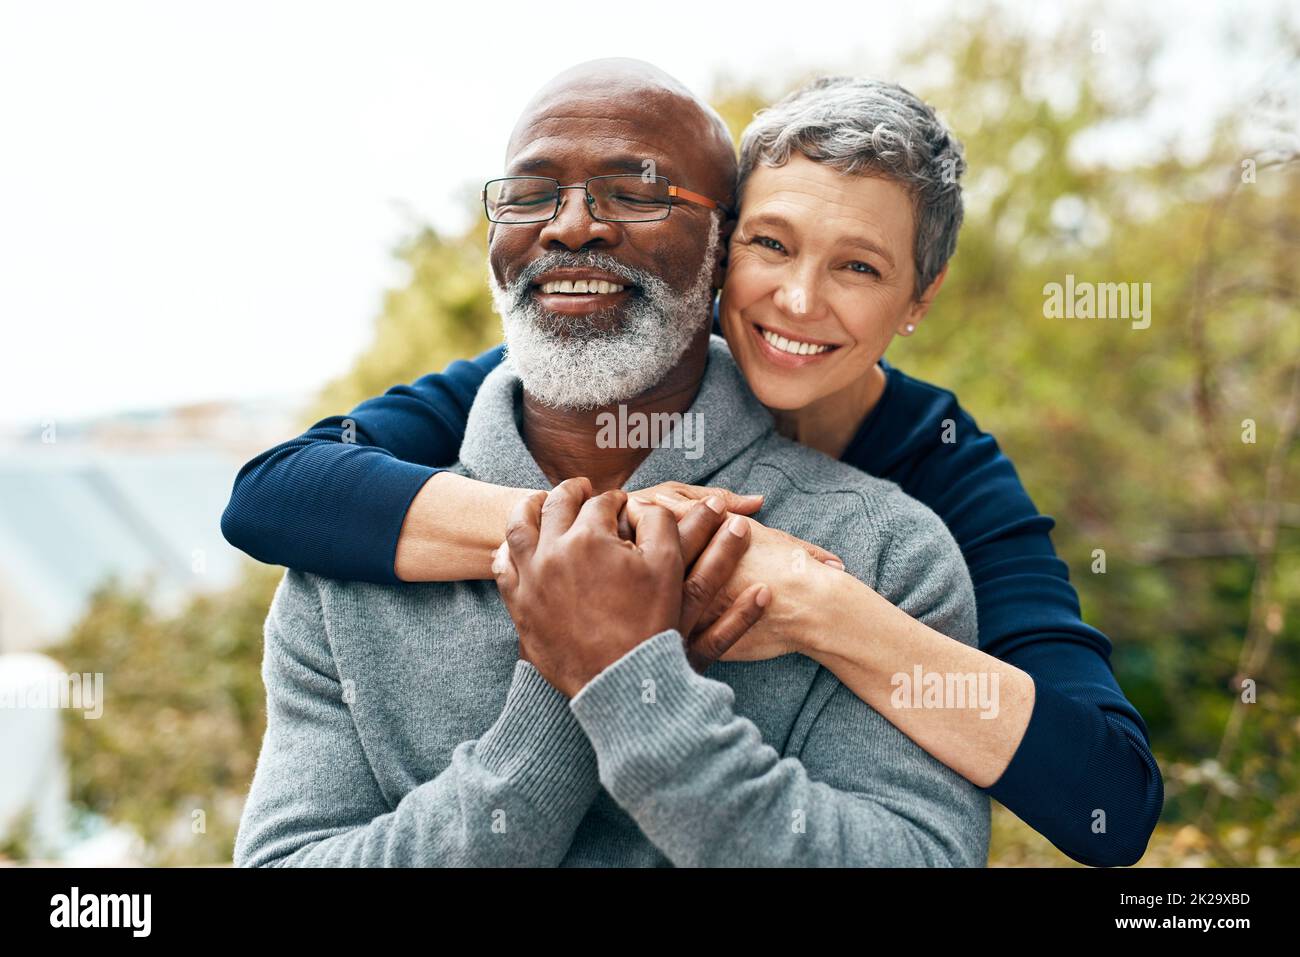 Notre amour s'est renforcé au fil des ans. Photo d'un couple senior heureux profitant d'un séjour de qualité au parc. Banque D'Images